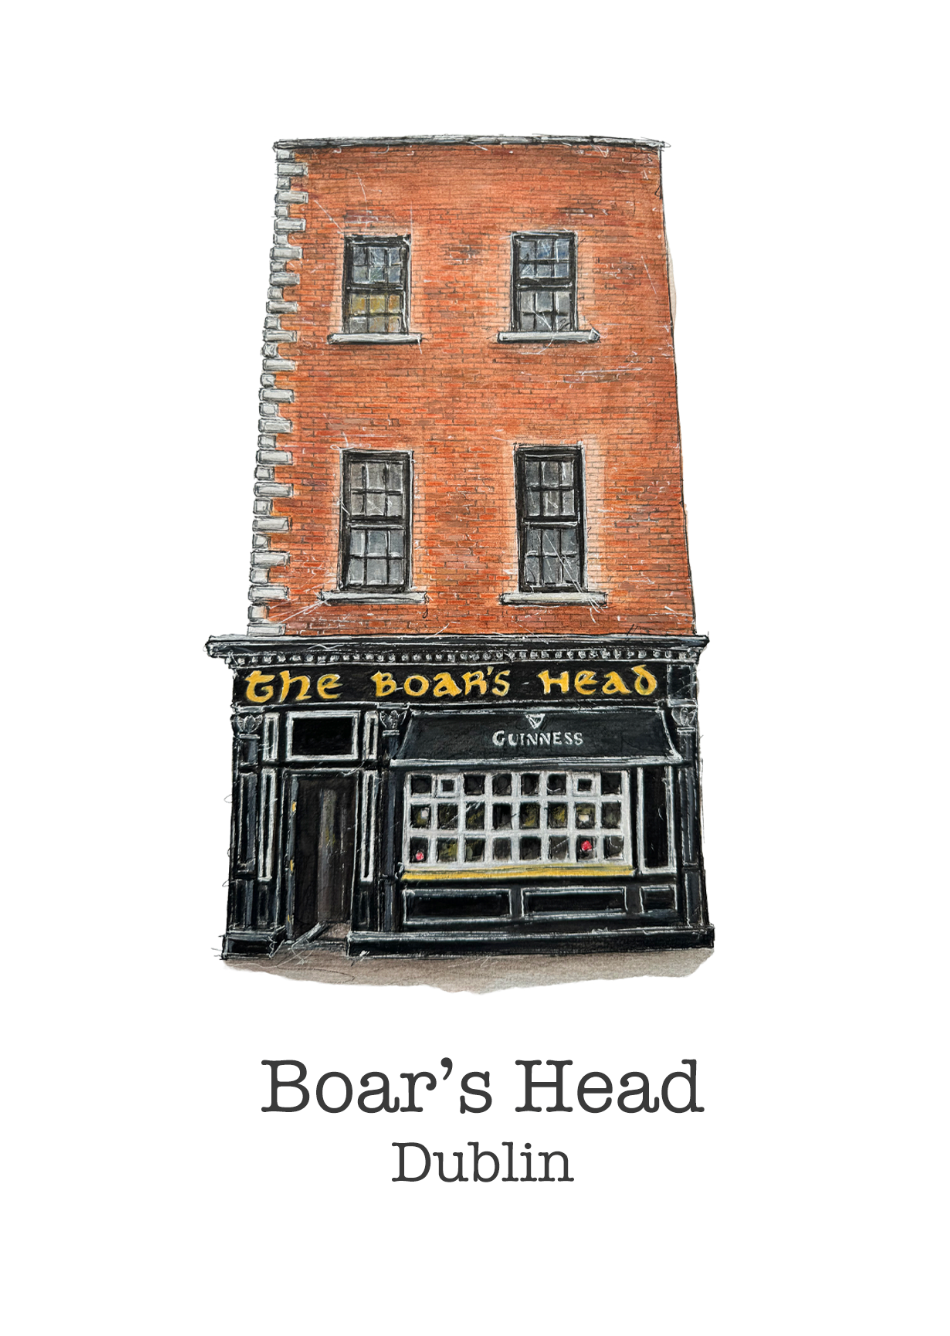 The-Boars-Head-Pub-Dublin-nightlife-gift-card